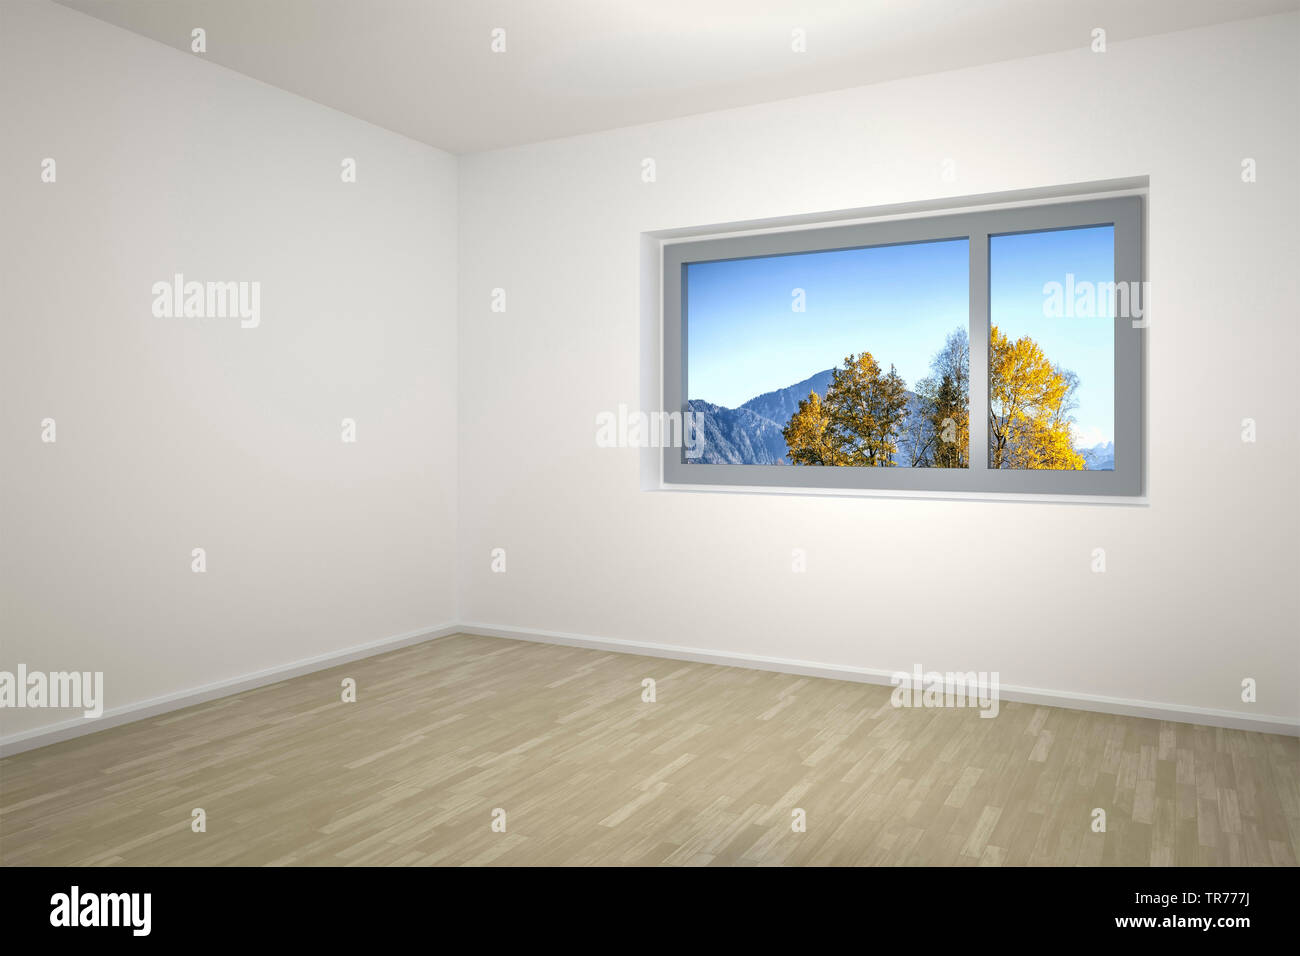 La computer grafica 3D, stanza vuota con le pareti bianche e finestra svelando un paesaggio naturale Foto Stock